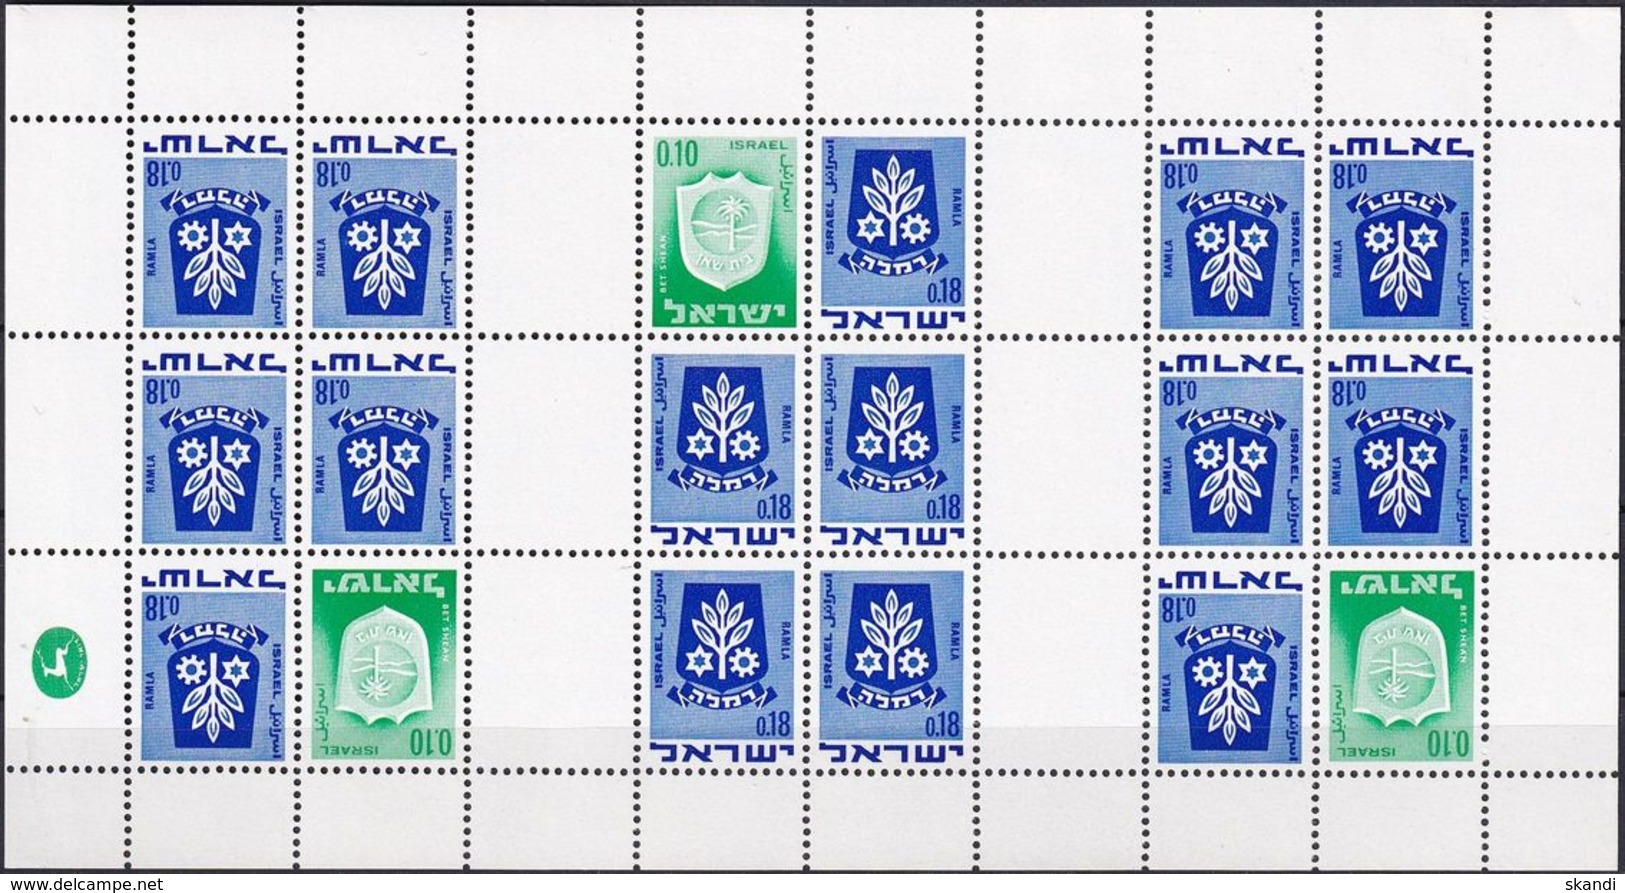 ISRAEL 1970 Mi-Nr. MHB 326 + 486 Kleinbogen ** MNH - Markenheftchen